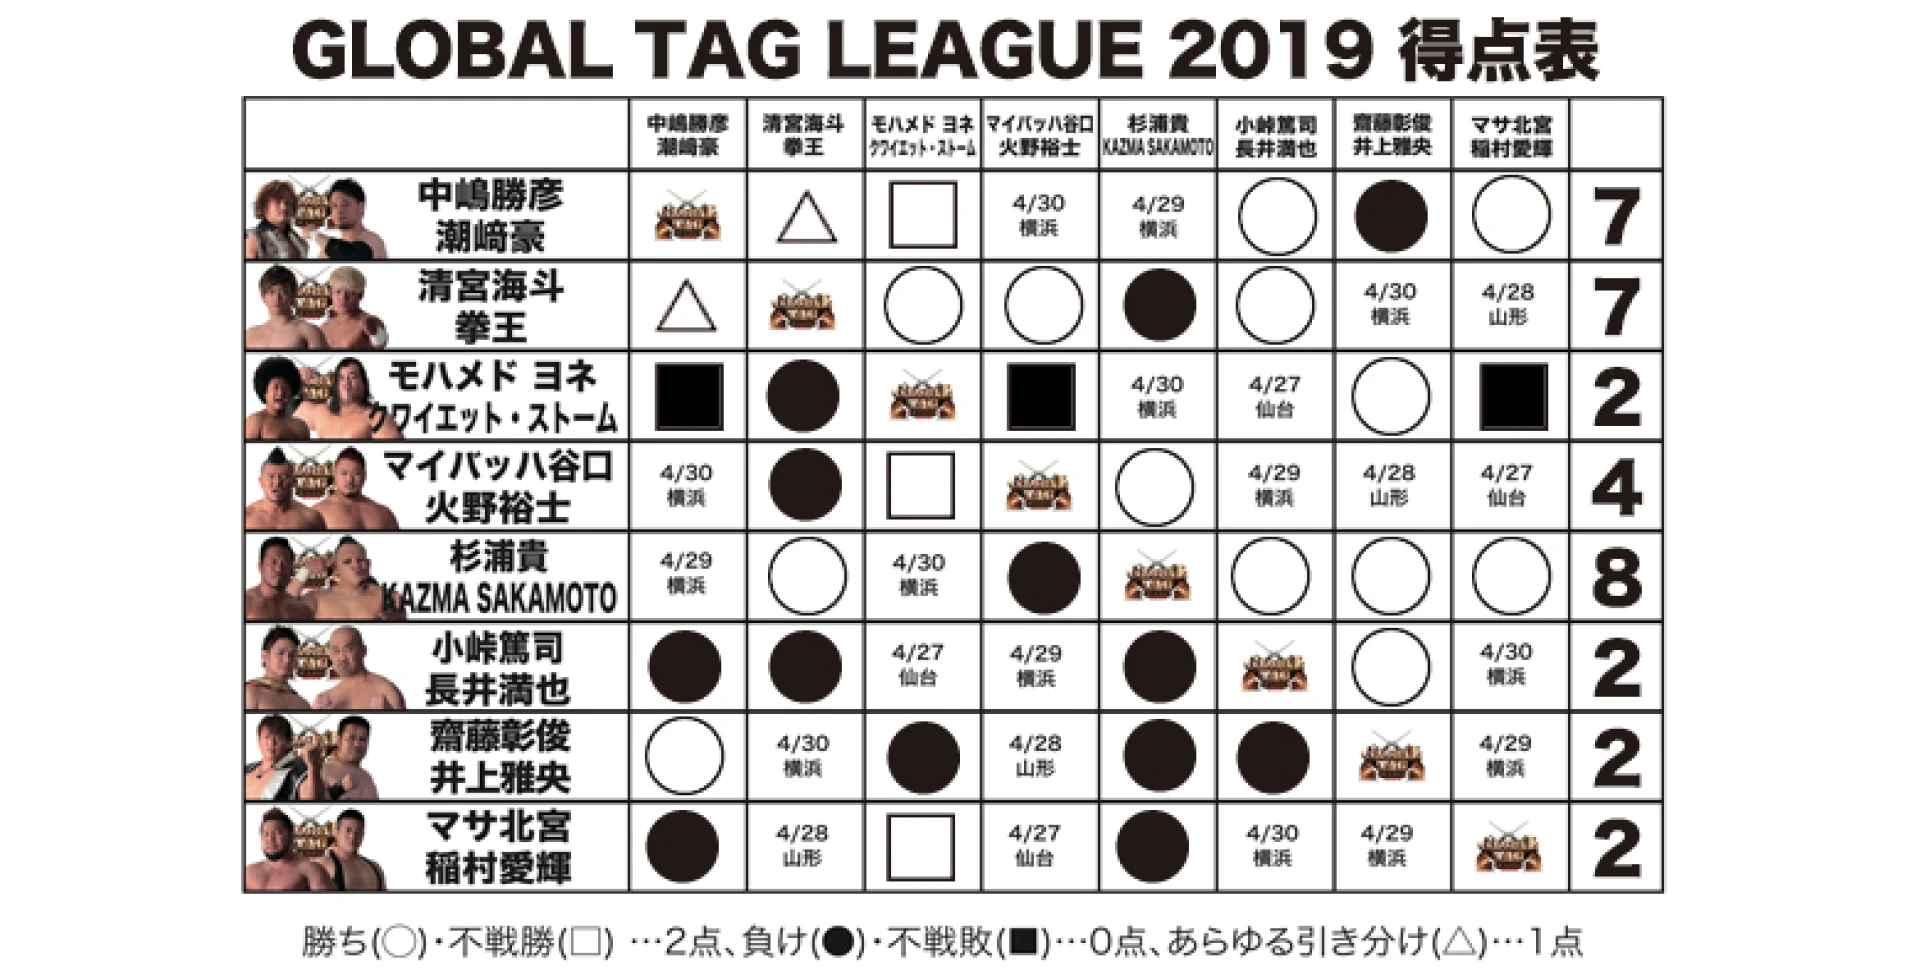 【4.21新潟大会終了時の得点状況】『GLOBAL TAG LEAGUE 2019』得点表